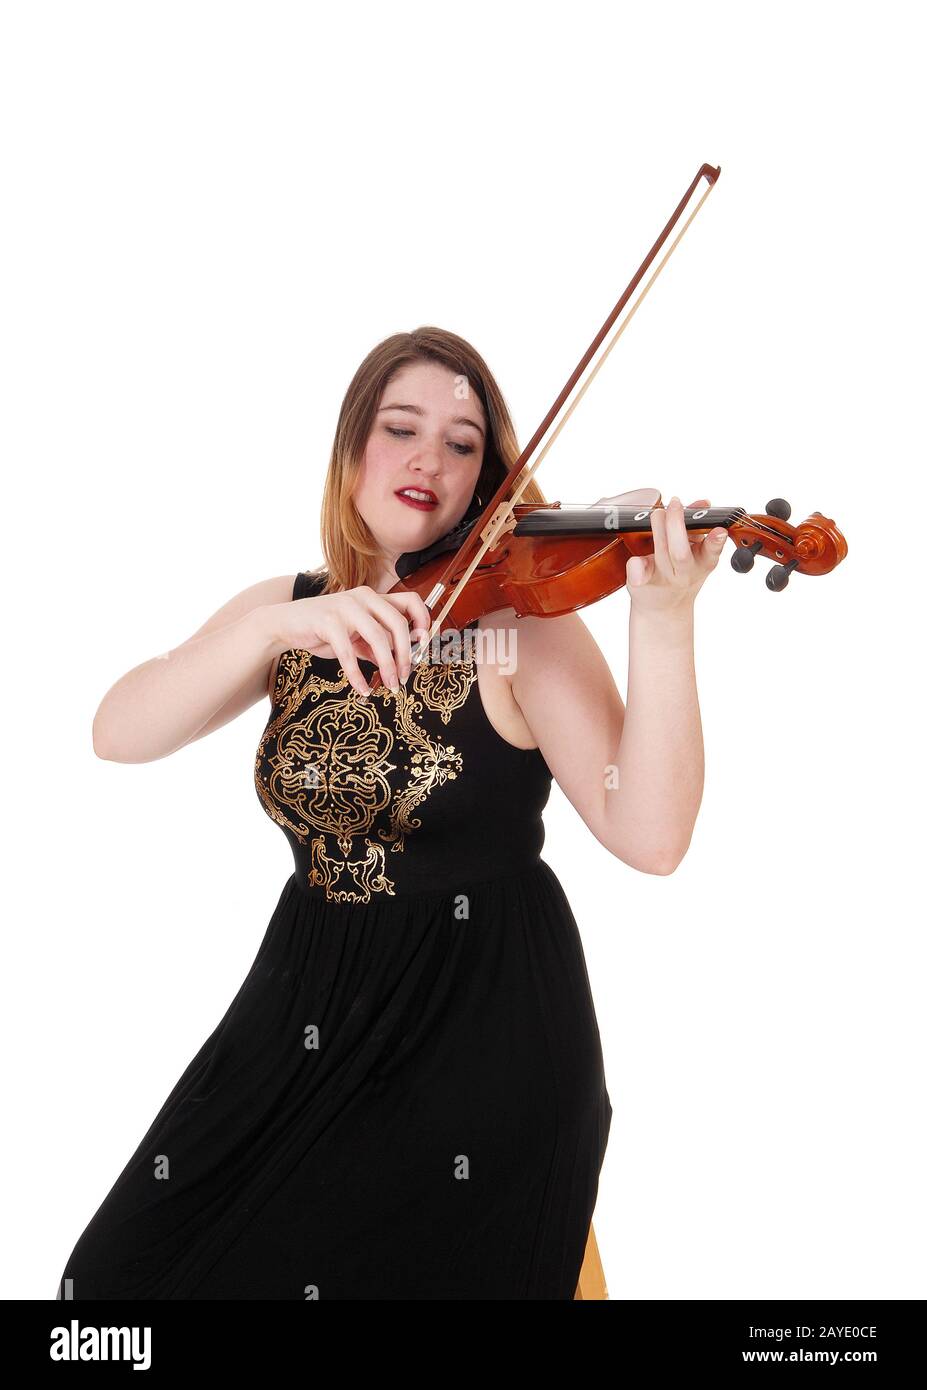 Mujer sentada con un largo vestido negro tocando el violín Foto de stock